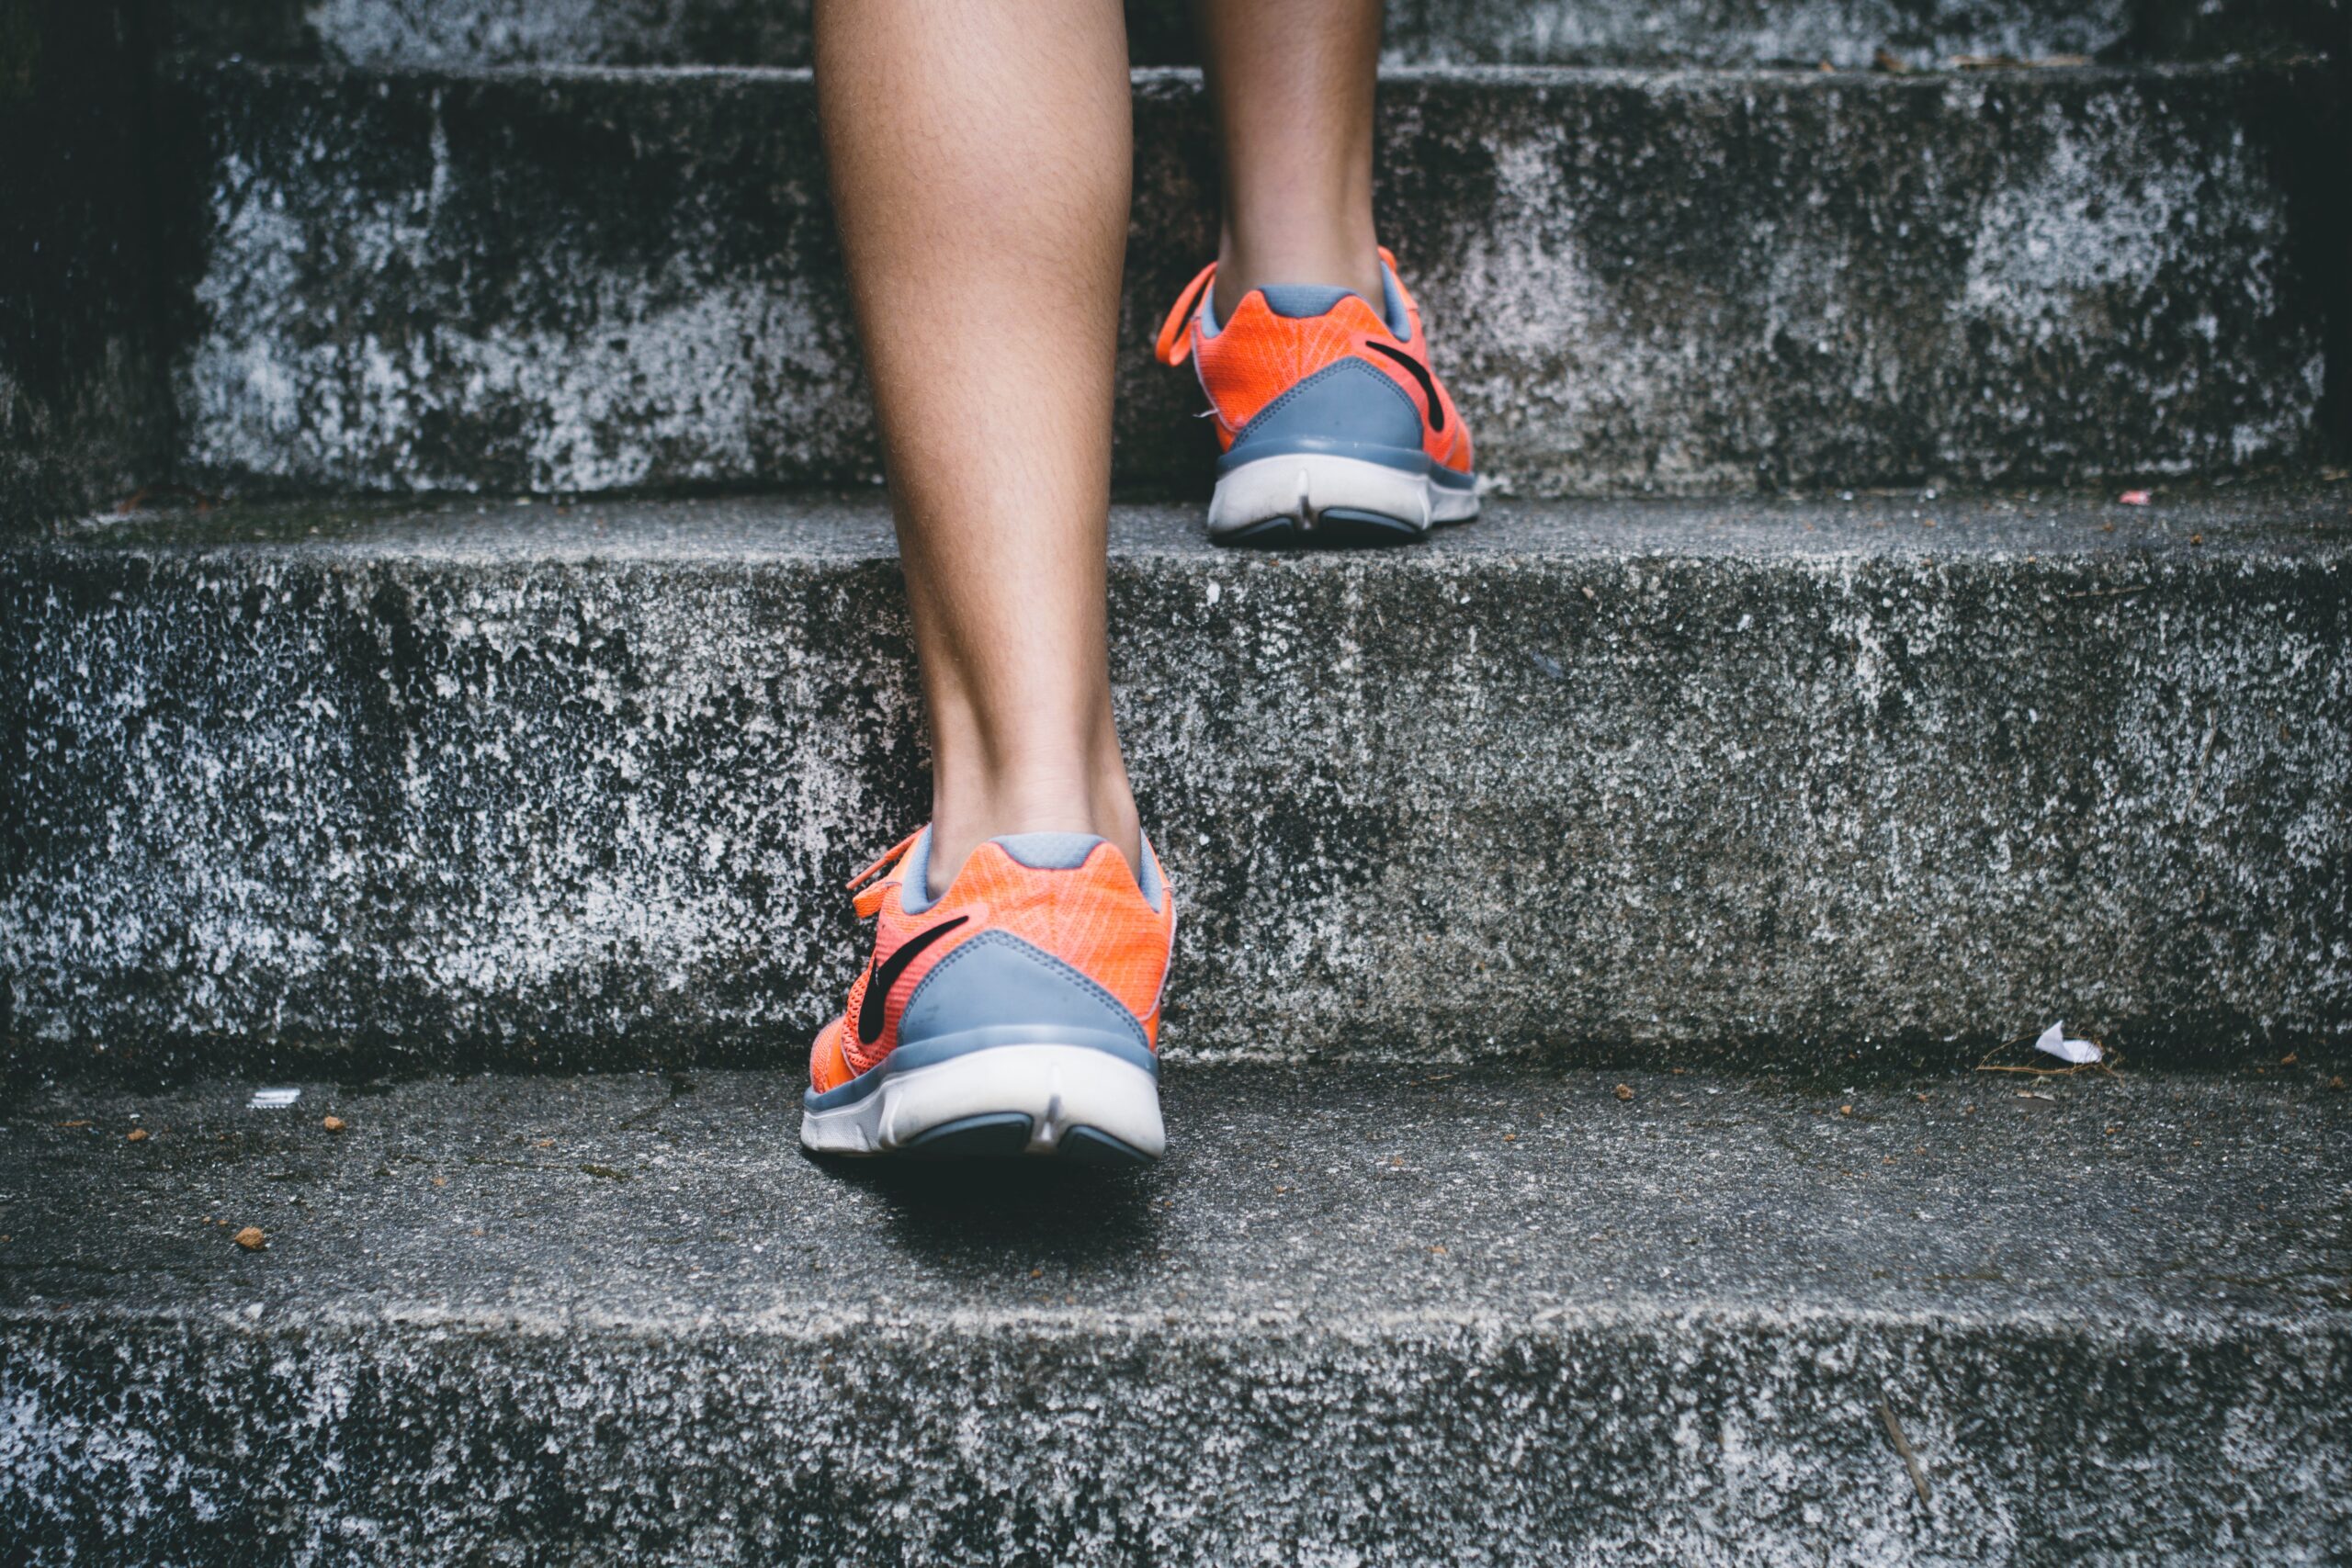 selvmotivasjon og viljestyrke kreves for å danne nye vaner, for eksempel å jogge.